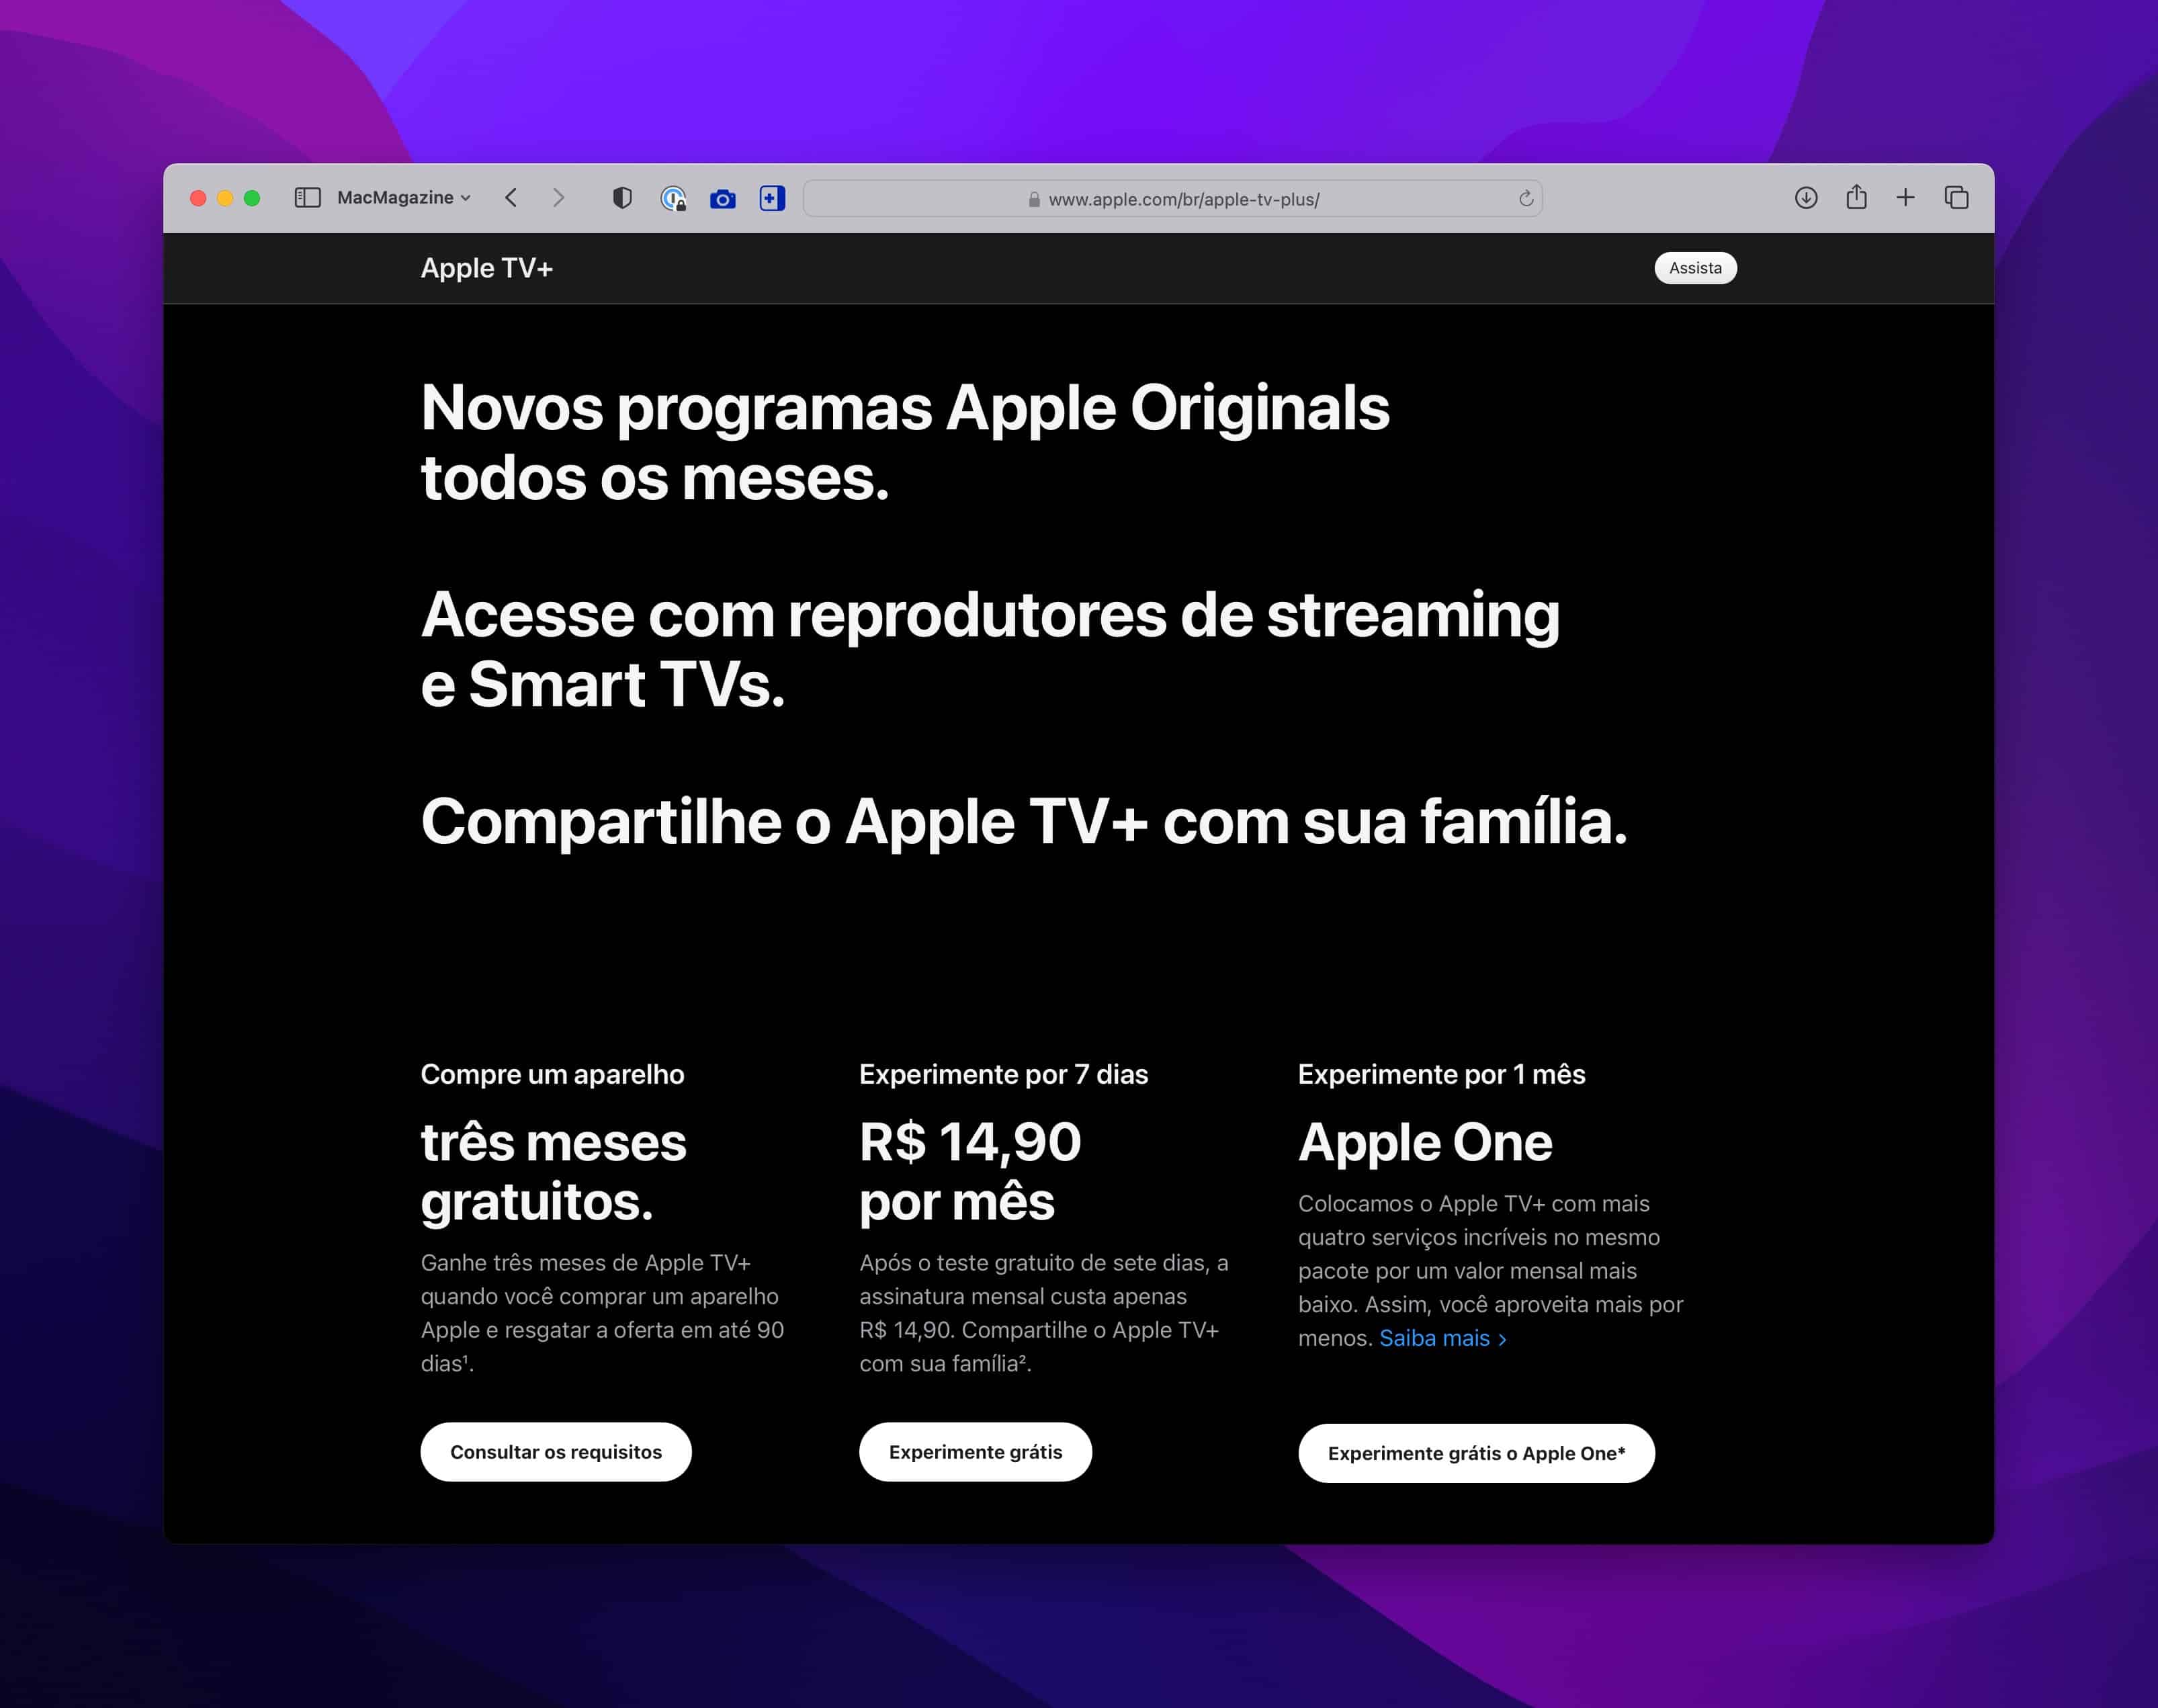 Apple e One de no Brasil - MacMagazine